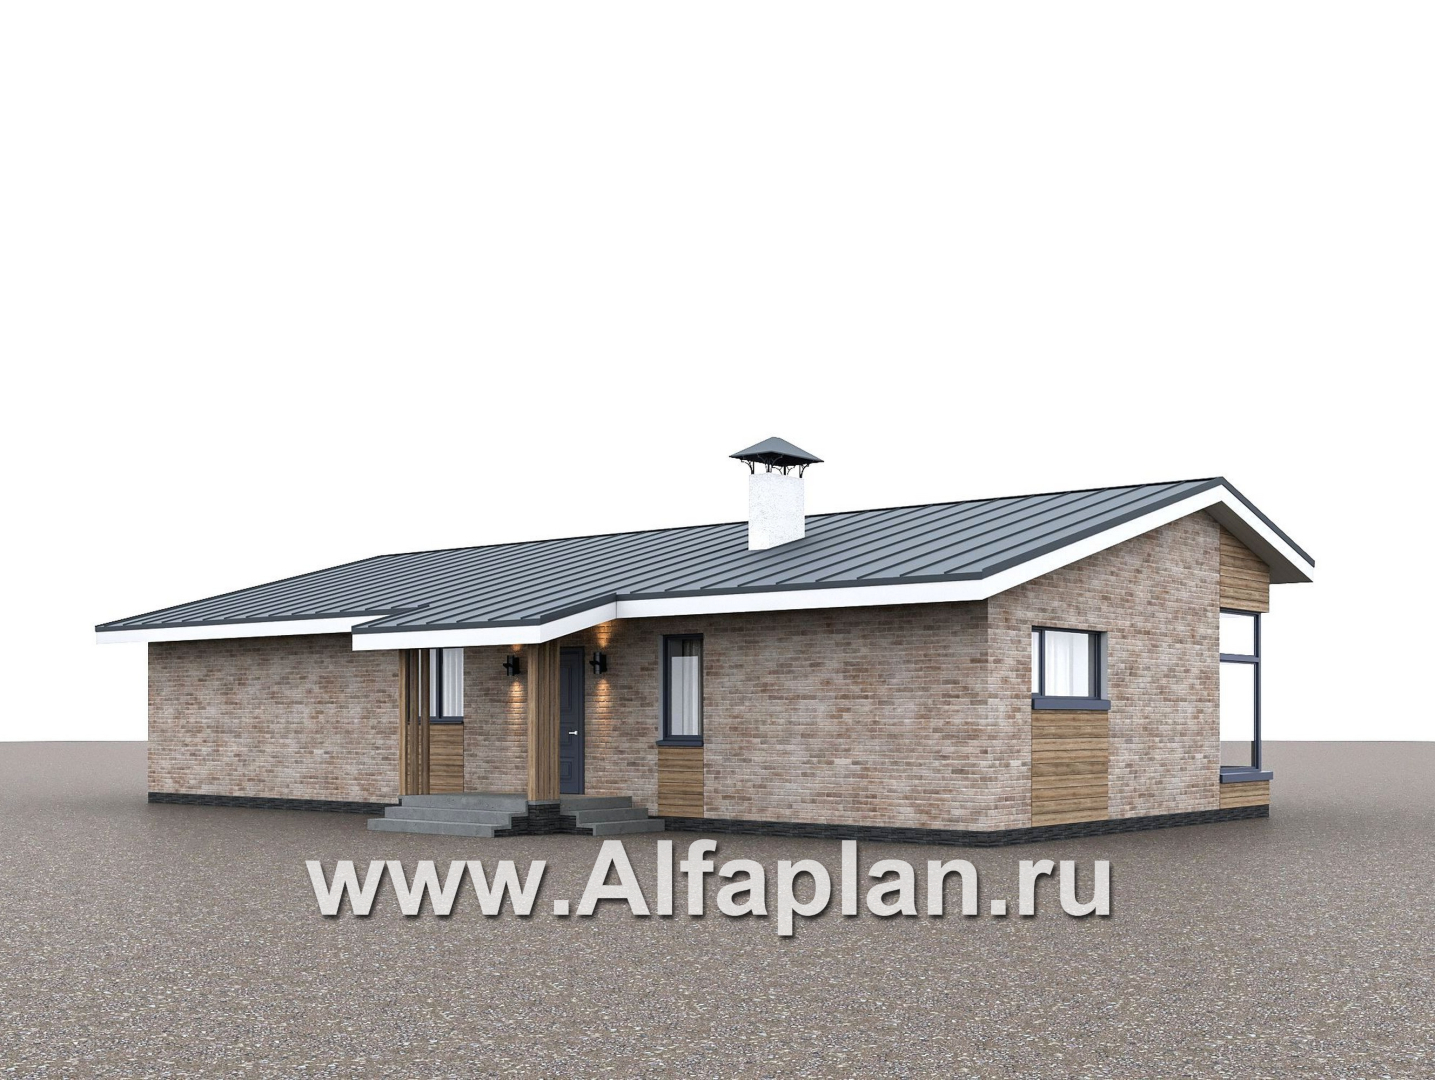 Проекты домов Альфаплан - "Алладин" - проект одноэтажного дома, мастер спальня, с террасой и красивым потолком гостиной со стропилами  - дополнительное изображение №3